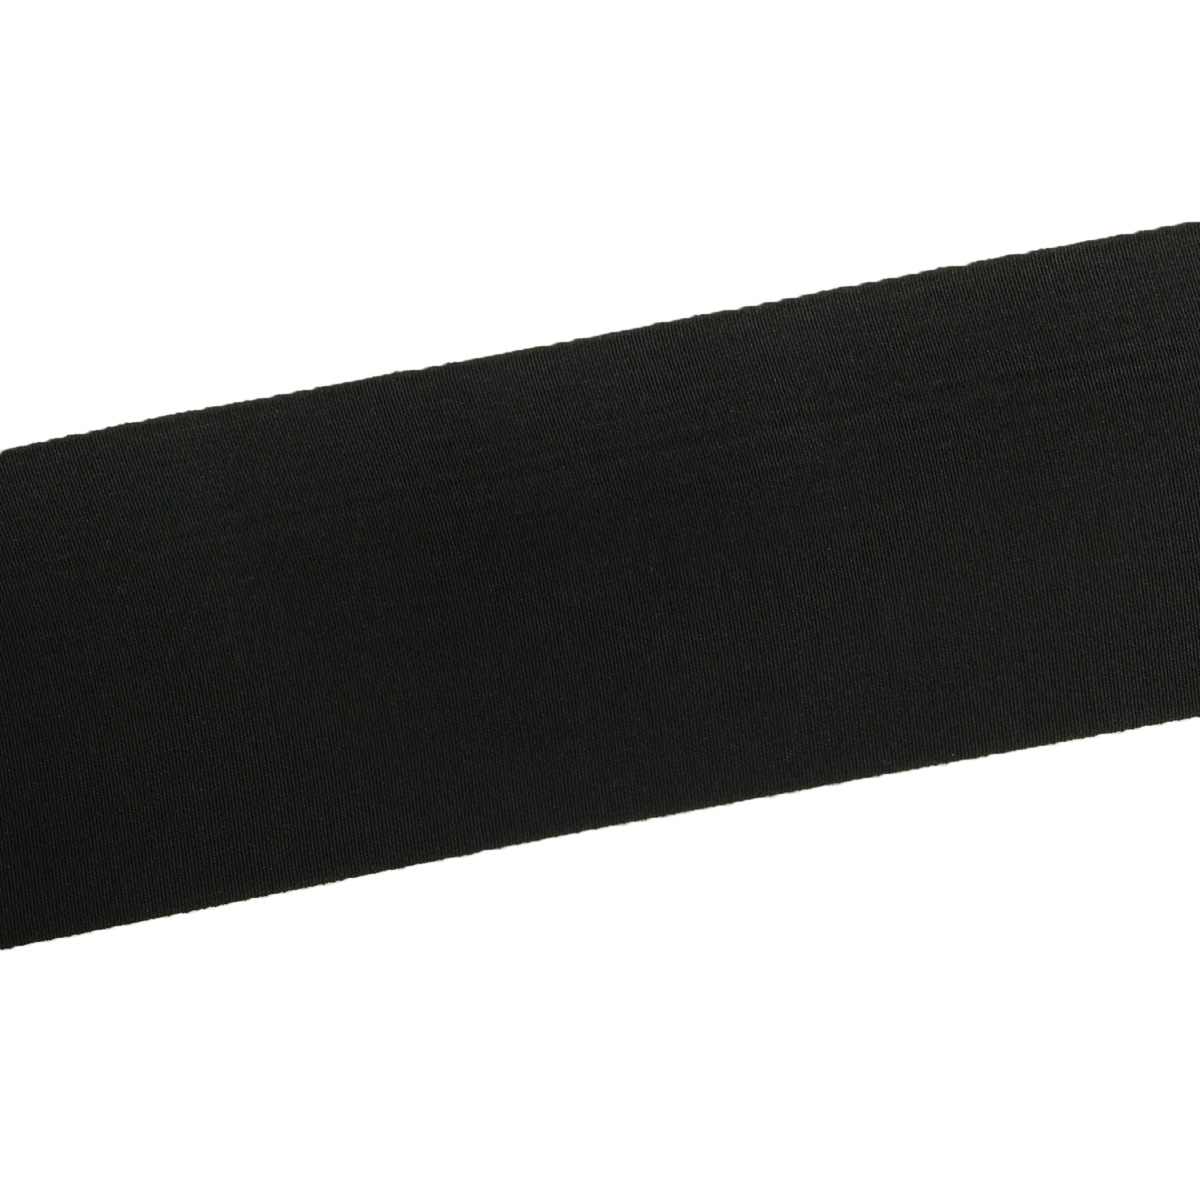 Лента Айрис резинка тканая эластичная башмачная для шитья челси чешек слипонов 100 мм 20 м черная - фото 2